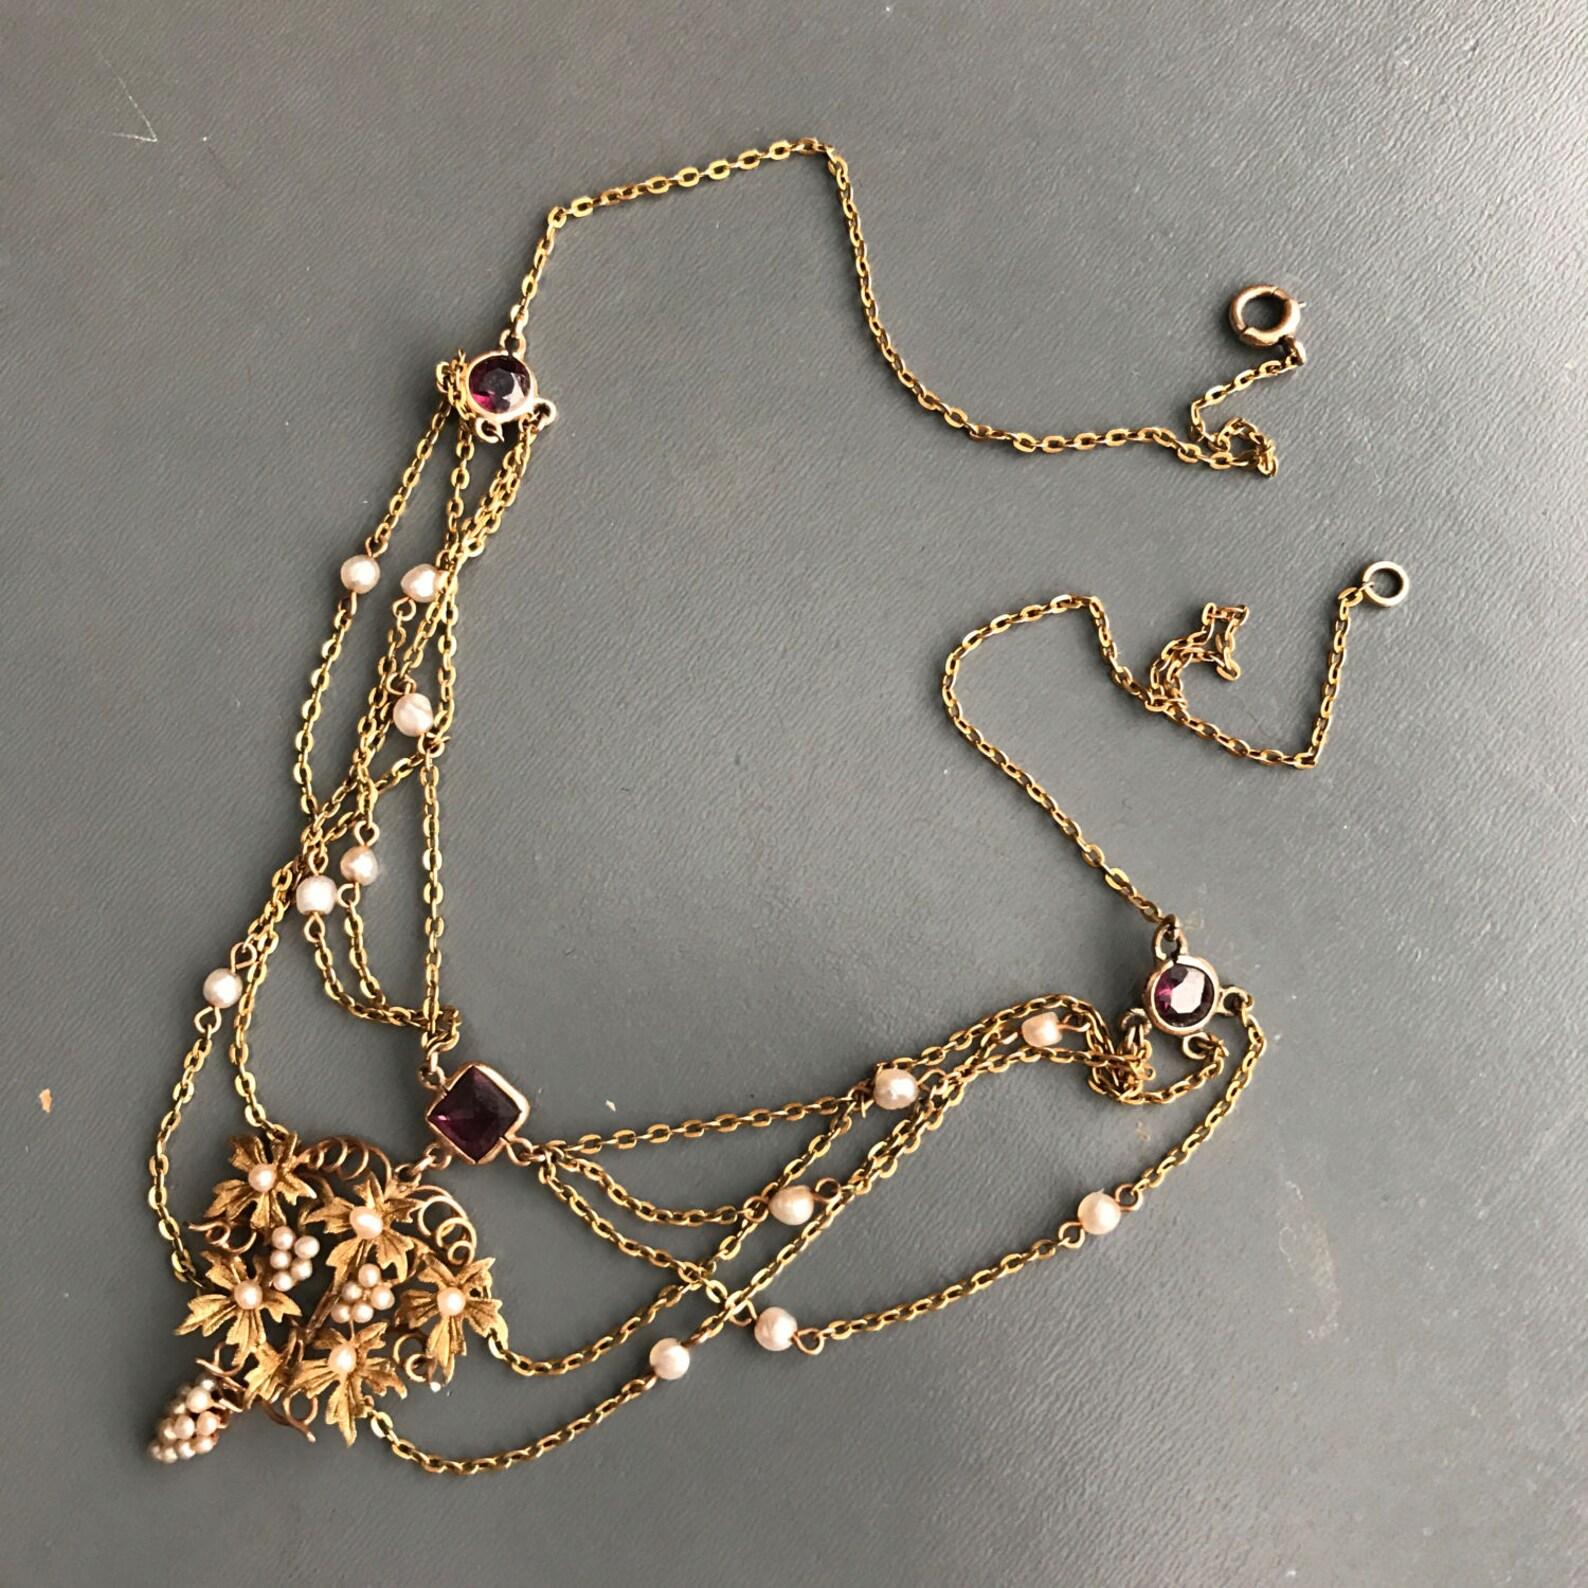 Arte Antiques OF PEARLS collier swag avec or 10kt et perles de rocaille authentiques .
Le pendentif central présente une grappe de raisin en or et en perles de rocaille entourée de feuilles d'or. Le collier se termine par un fermoir à ressort